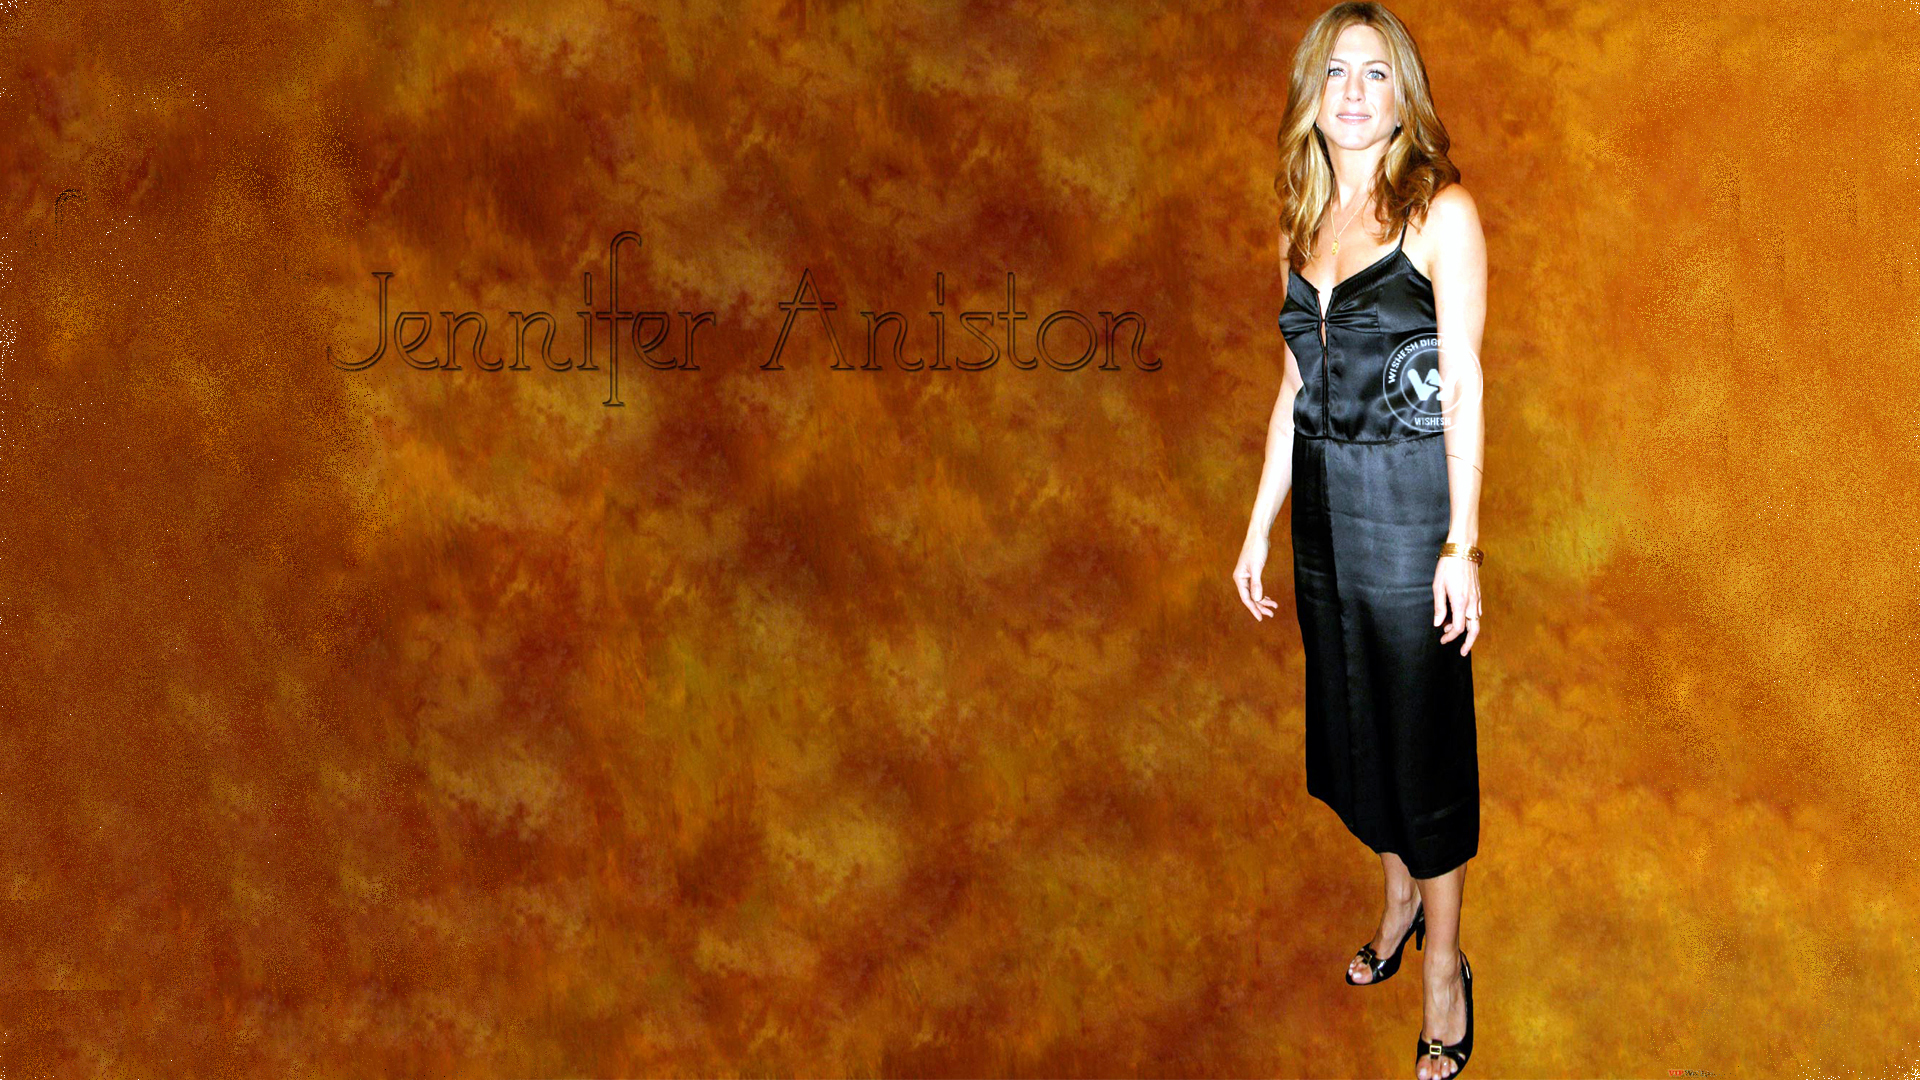 Hot Actress Jennifer Aniston Latest Stills | Wallpaper 8of 10 | Hot Hollywood Actress Jennifer Aniston Wallpapers. | Jennifer Aniston Hot Latest Wallpapers